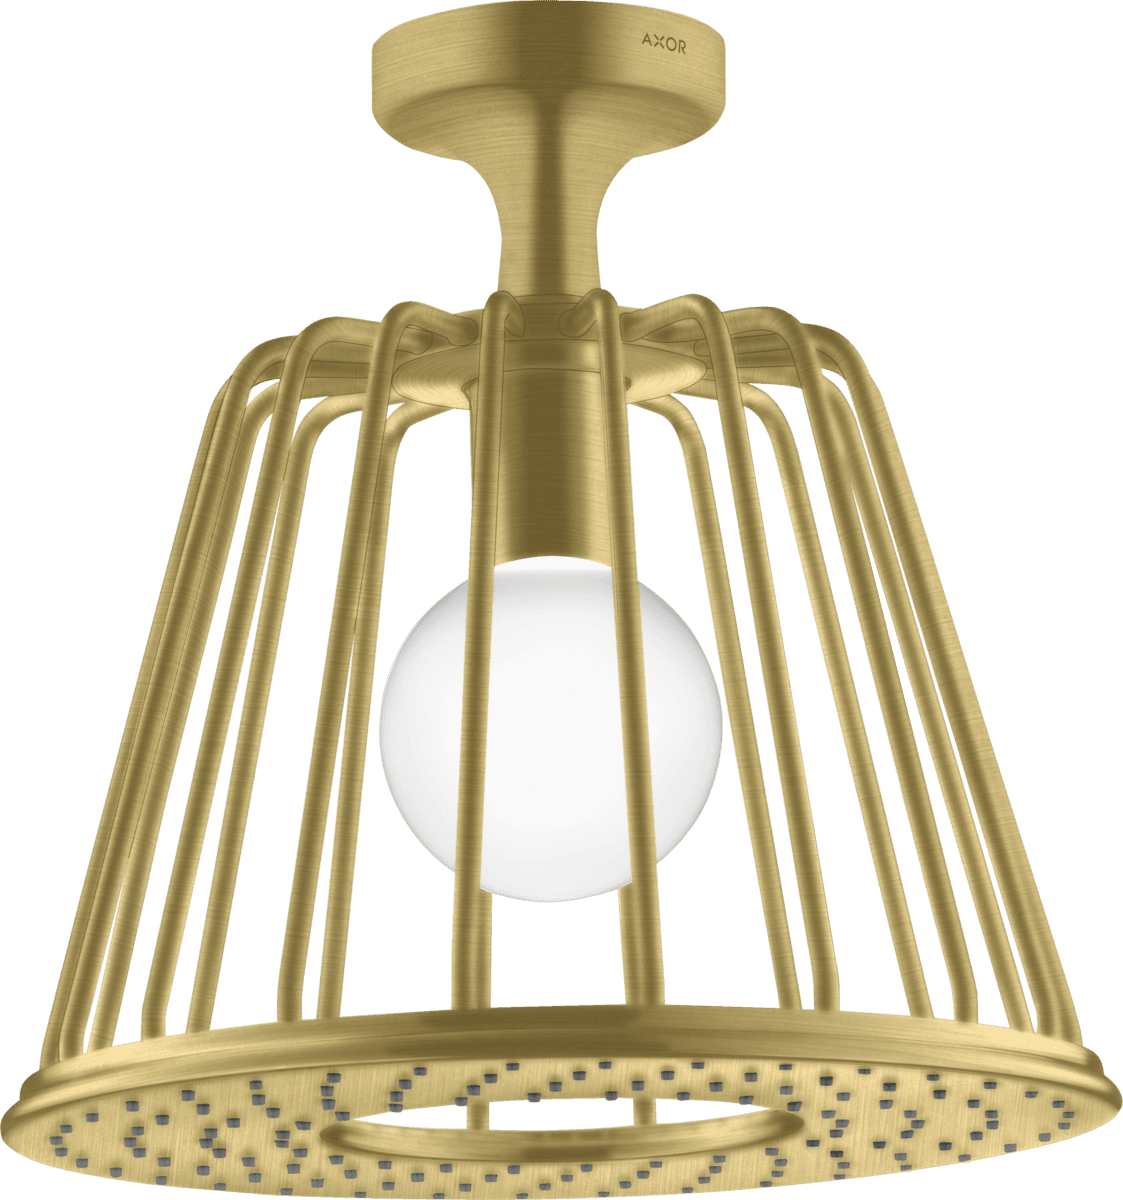 HANSGROHE AXOR LampShower/Nendo LampShower 275 1jet tavan bağlantılı #26032950 - Mat Pirinç resmi